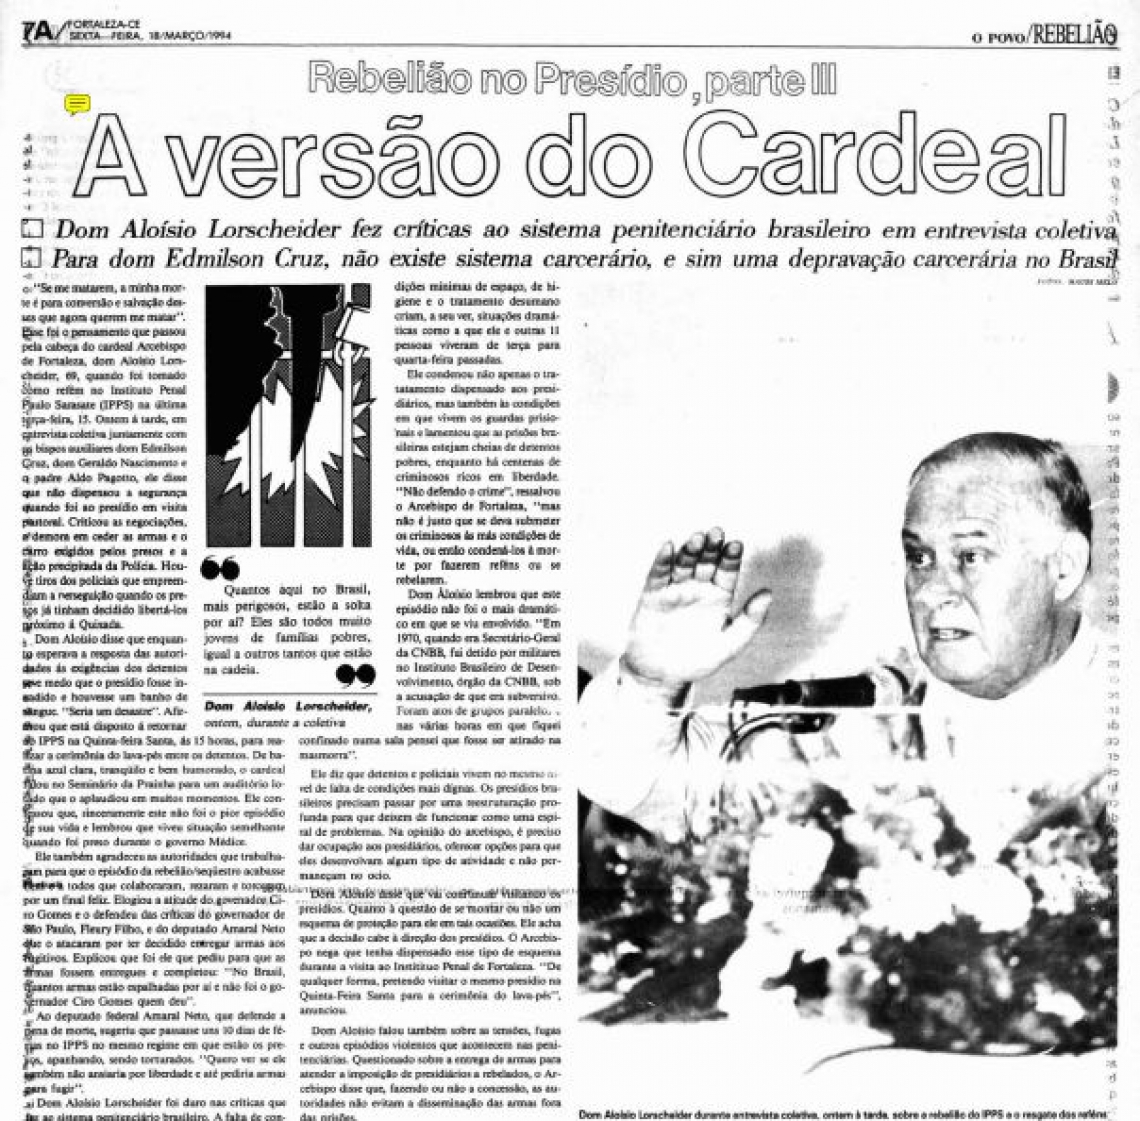 Recorte do jornal O POVO em 17 de março de 1994